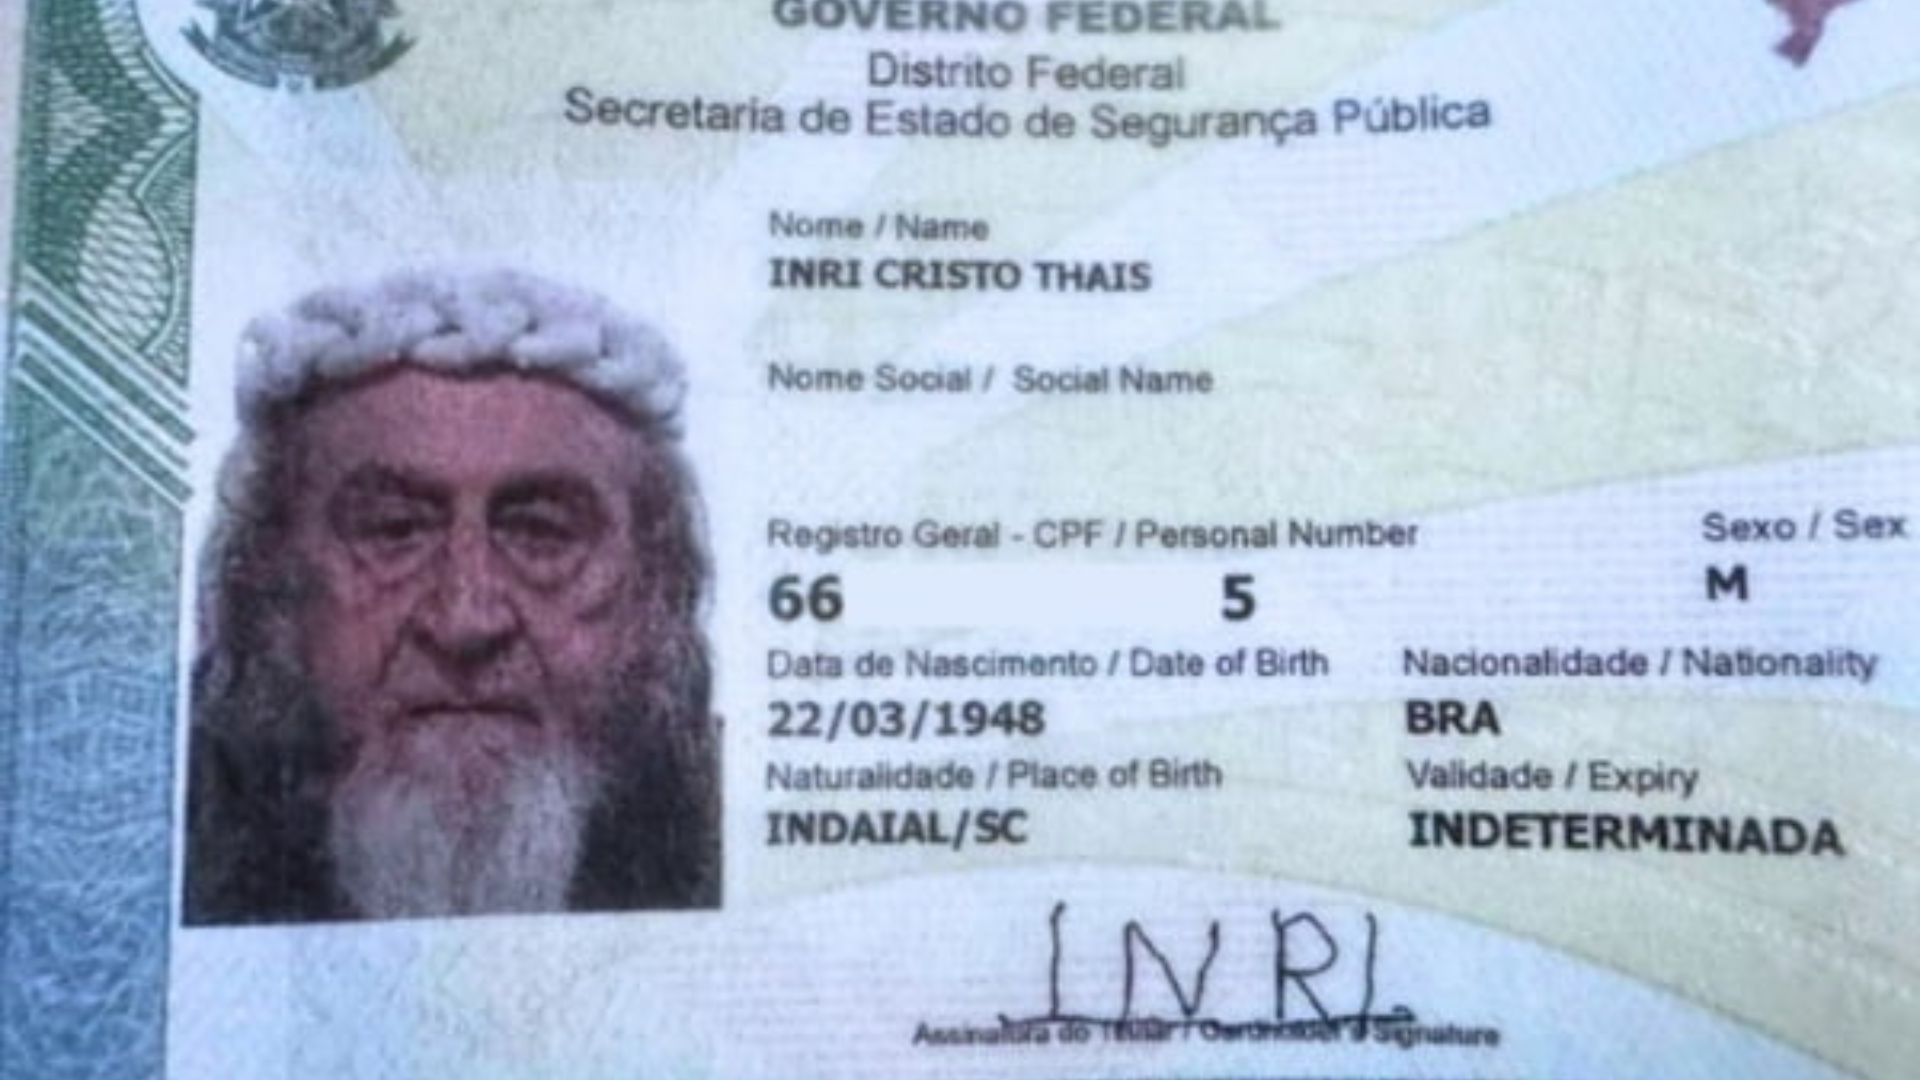 Nova identidade de Inri Cristo. Foto: Divulgação/Internet.